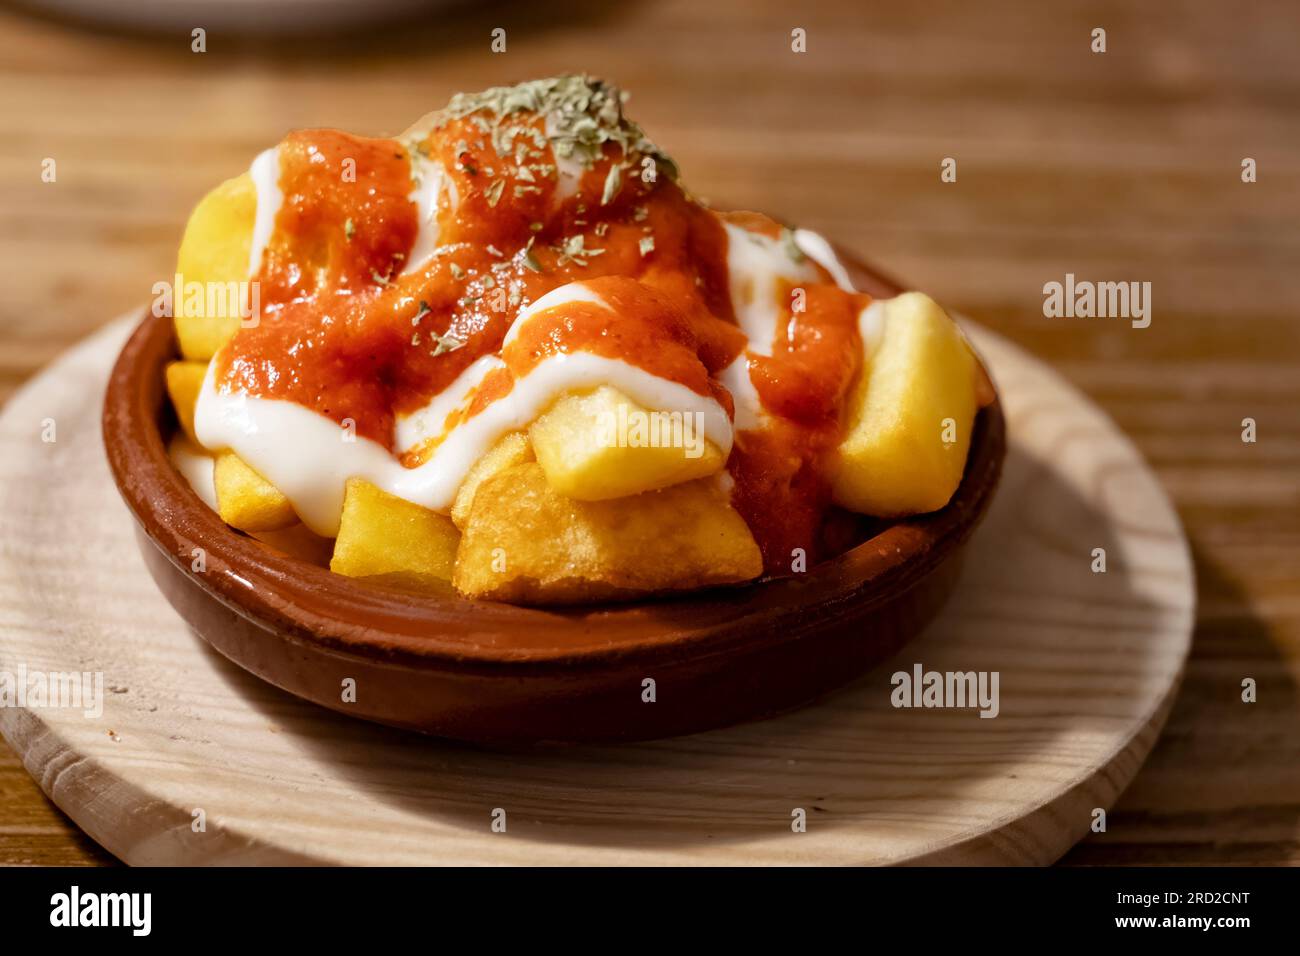 Una sola porción de tapas de patatas bravas o patatas fritas pequeñas servidas en un tazón con salsa de tomate y aderezo de mayonesa en un bar de tapas. Foto de stock